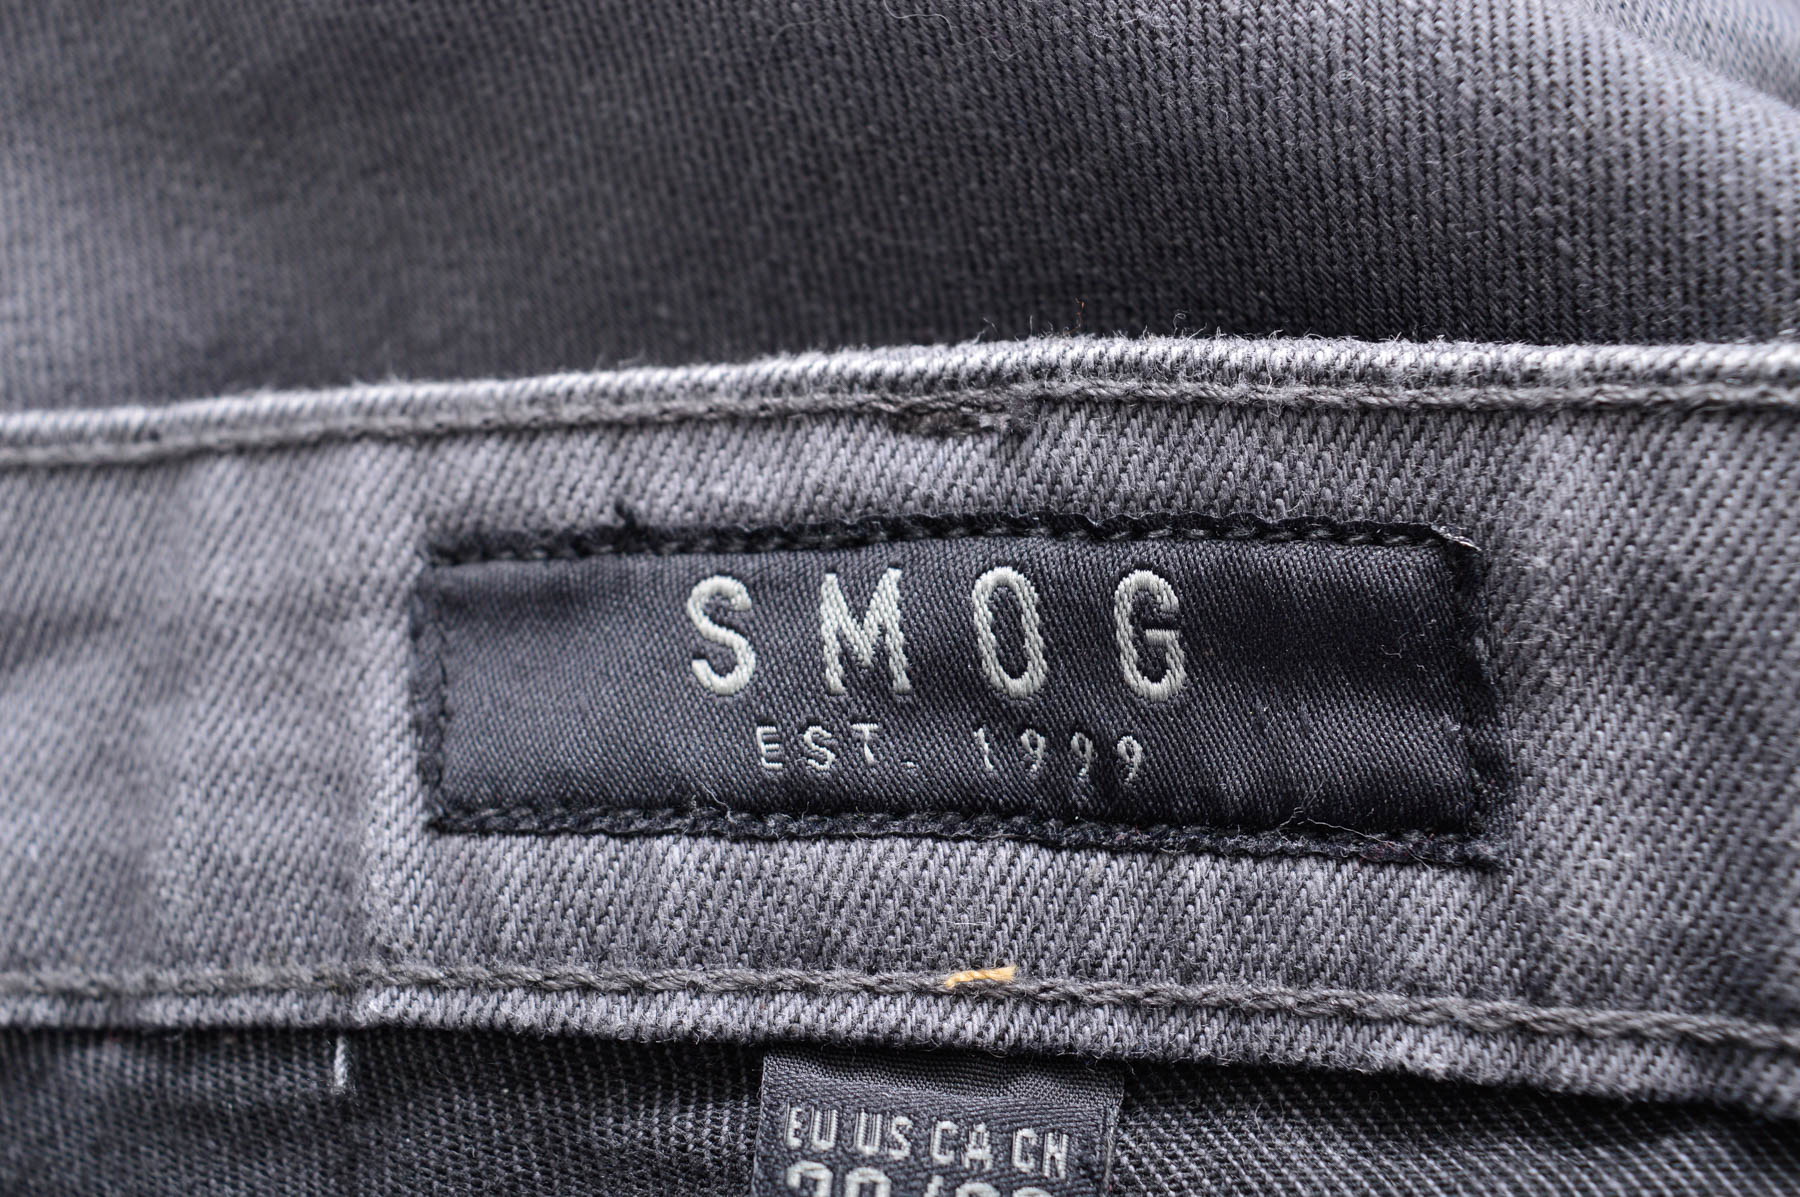 Jeans pentru bărbăți - SMOG - 2